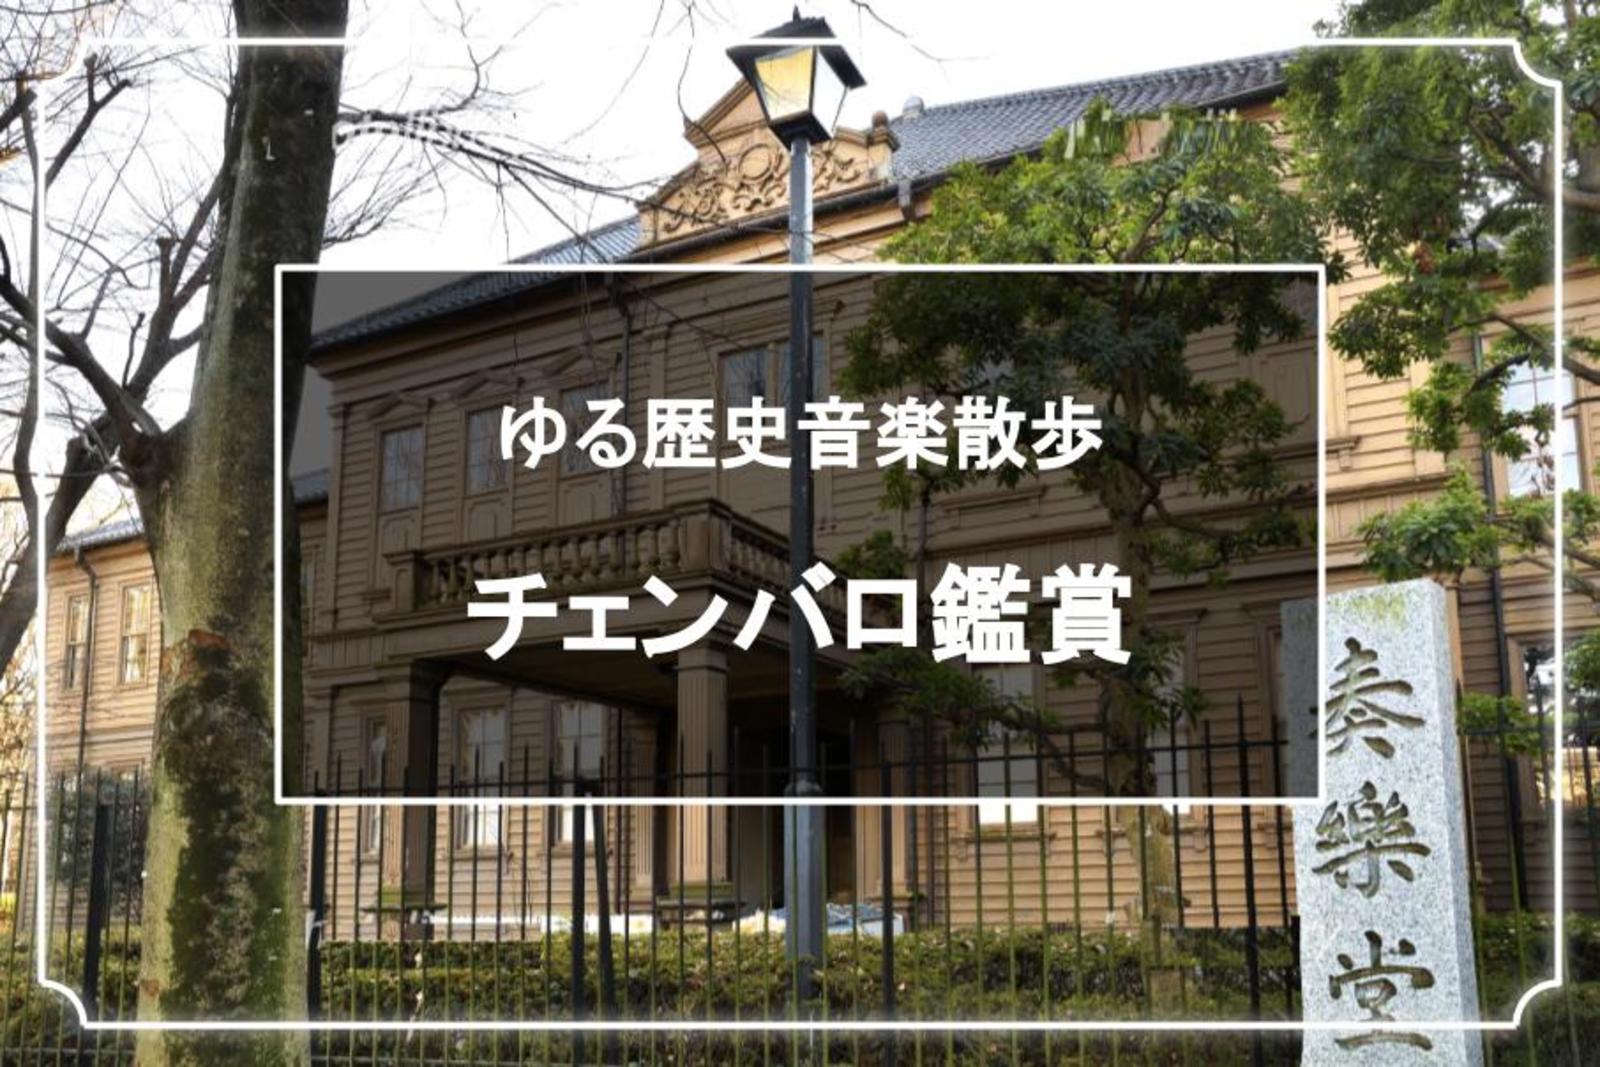 旧東京音楽学校奏楽堂のチェンバロの鑑賞会と上野公園散歩